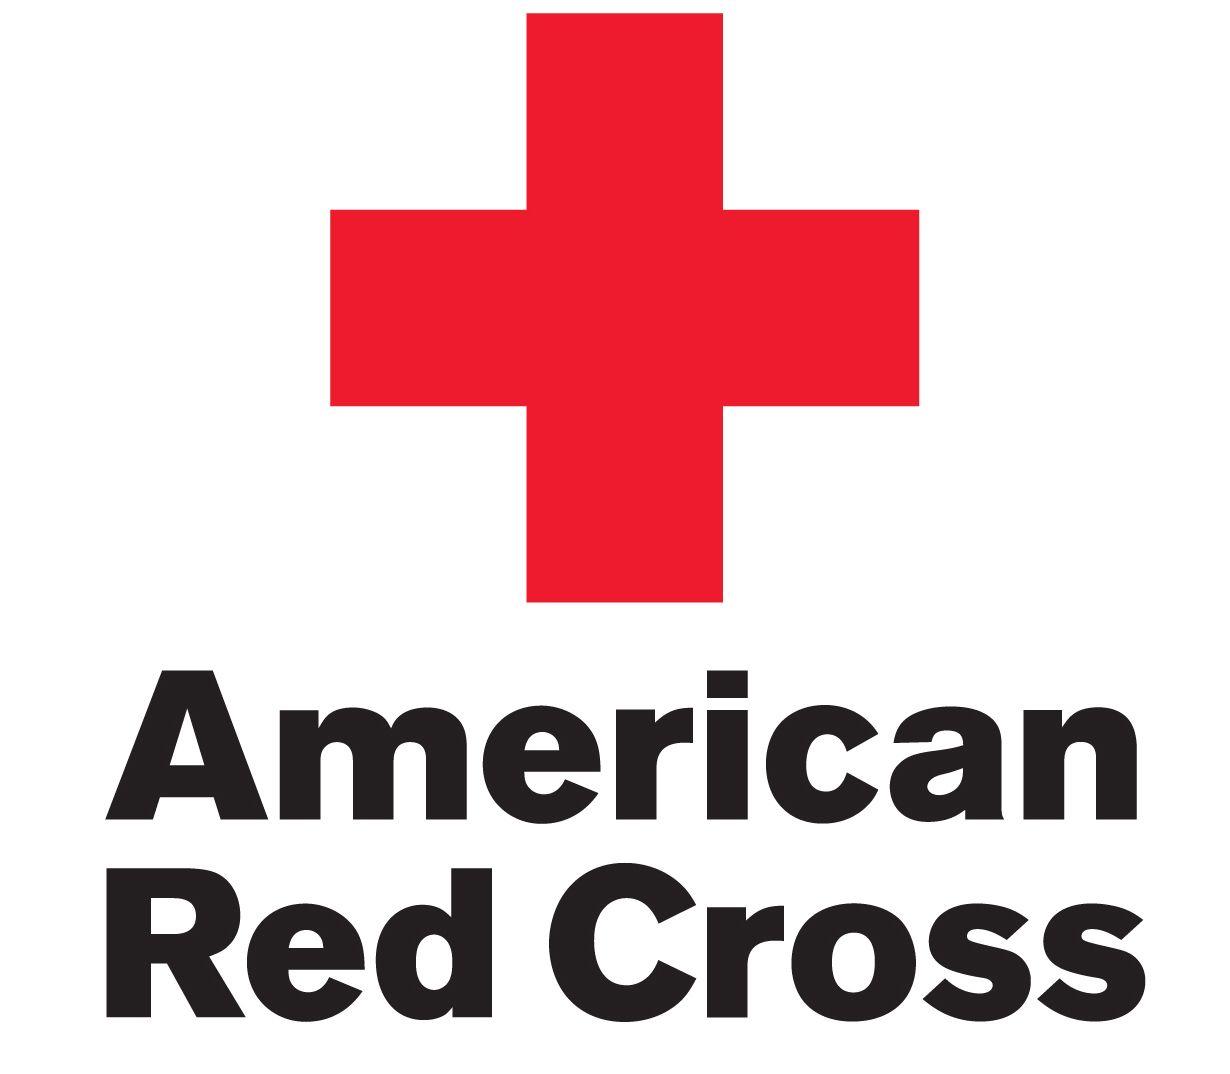 Red Cross in Shield Logo - American Red Cross Logo